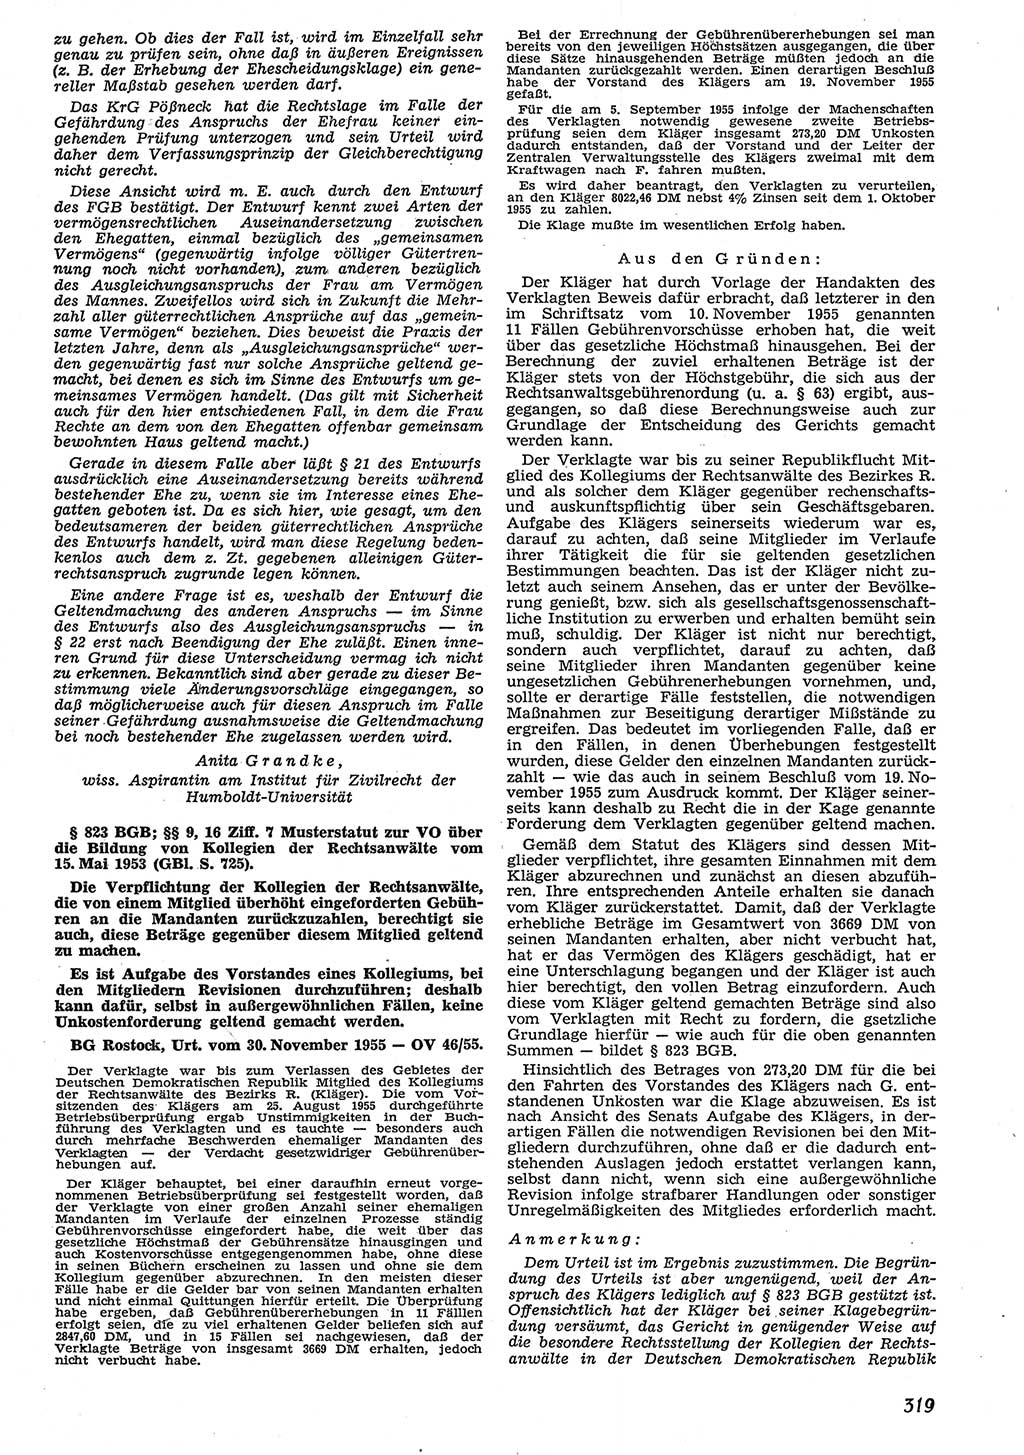 Neue Justiz (NJ), Zeitschrift für Recht und Rechtswissenschaft [Deutsche Demokratische Republik (DDR)], 10. Jahrgang 1956, Seite 319 (NJ DDR 1956, S. 319)